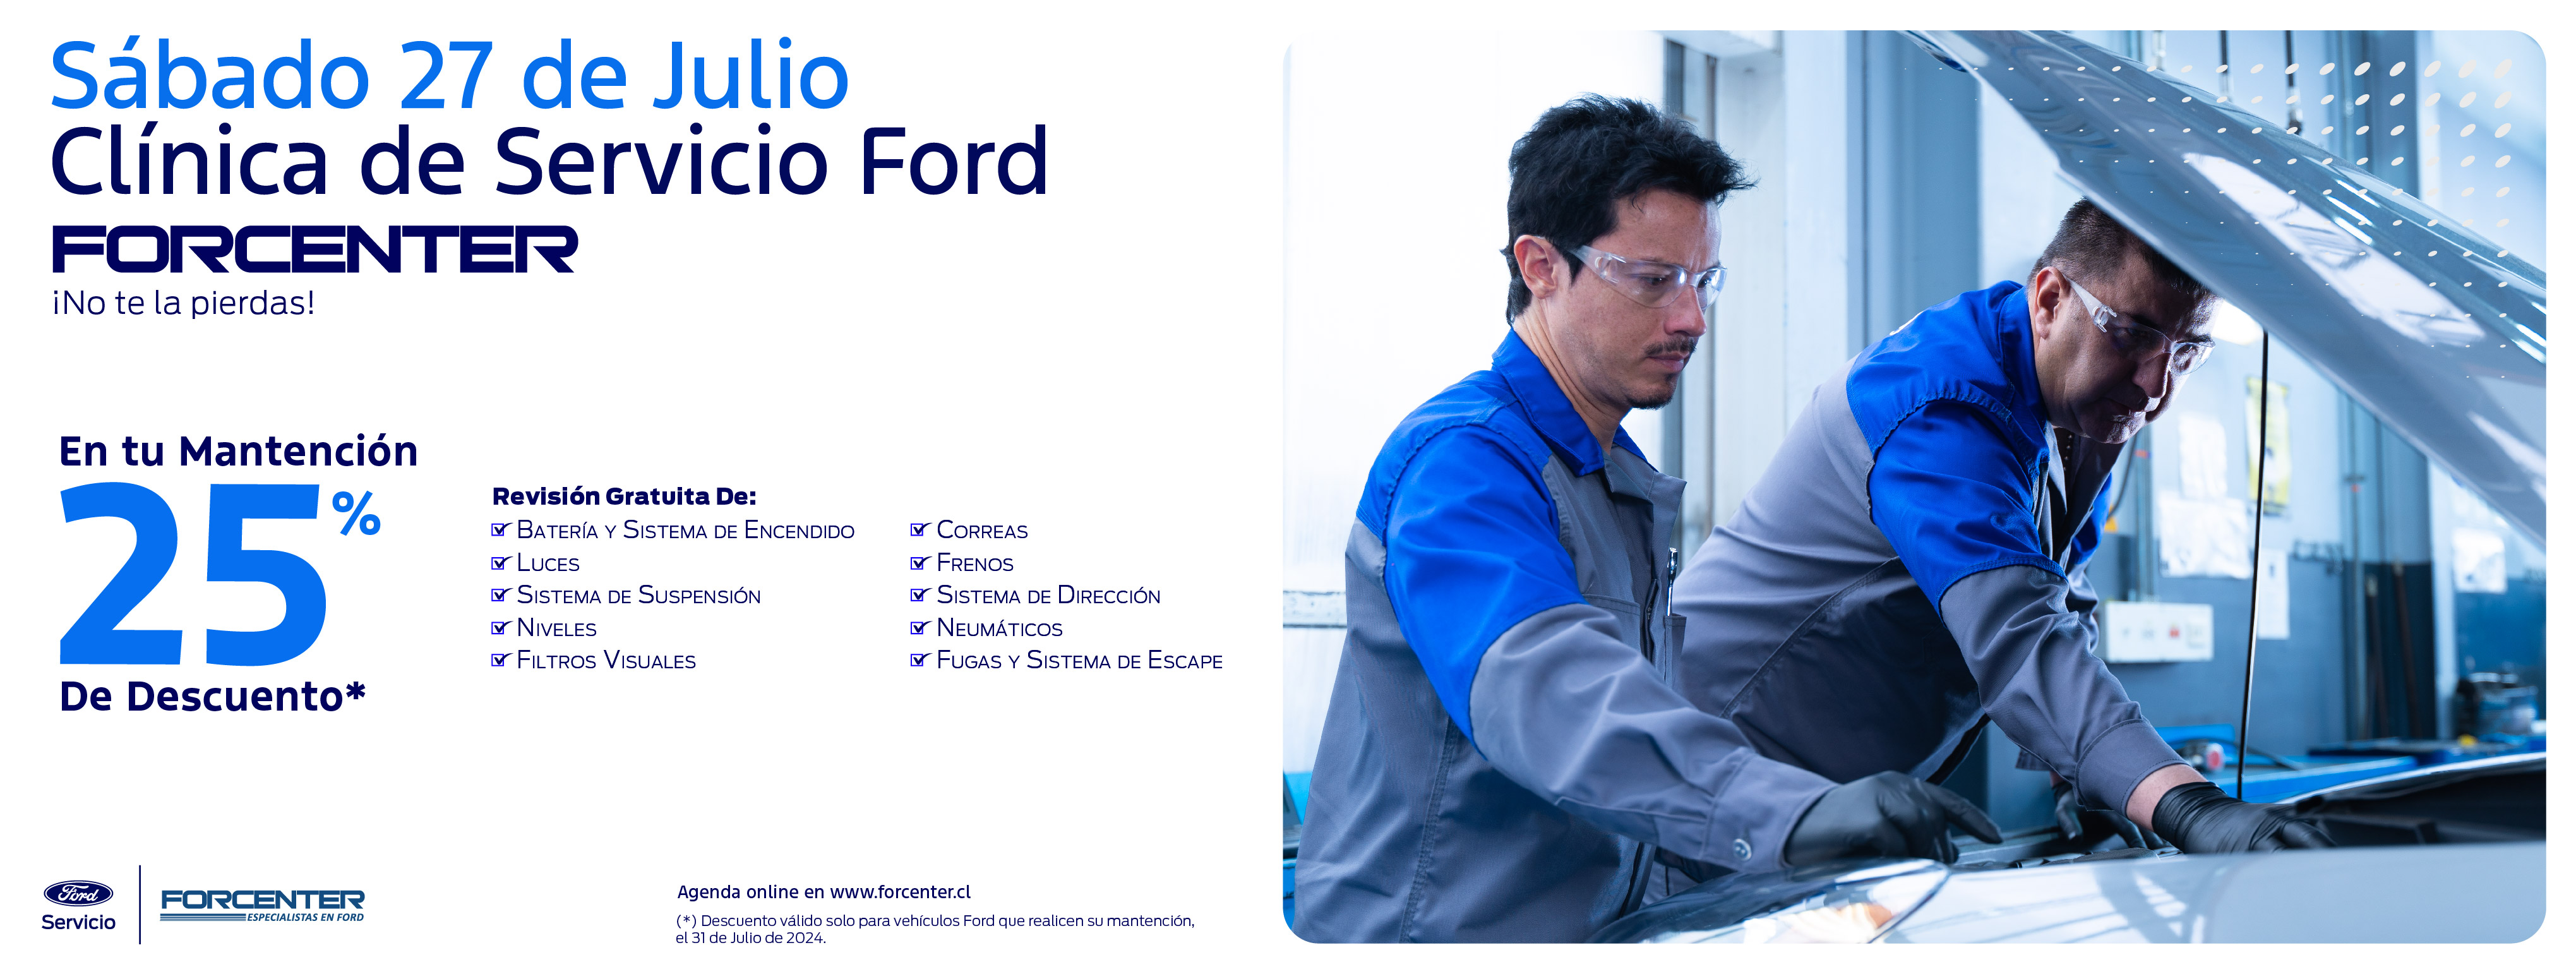 Clínica de Servicio Ford